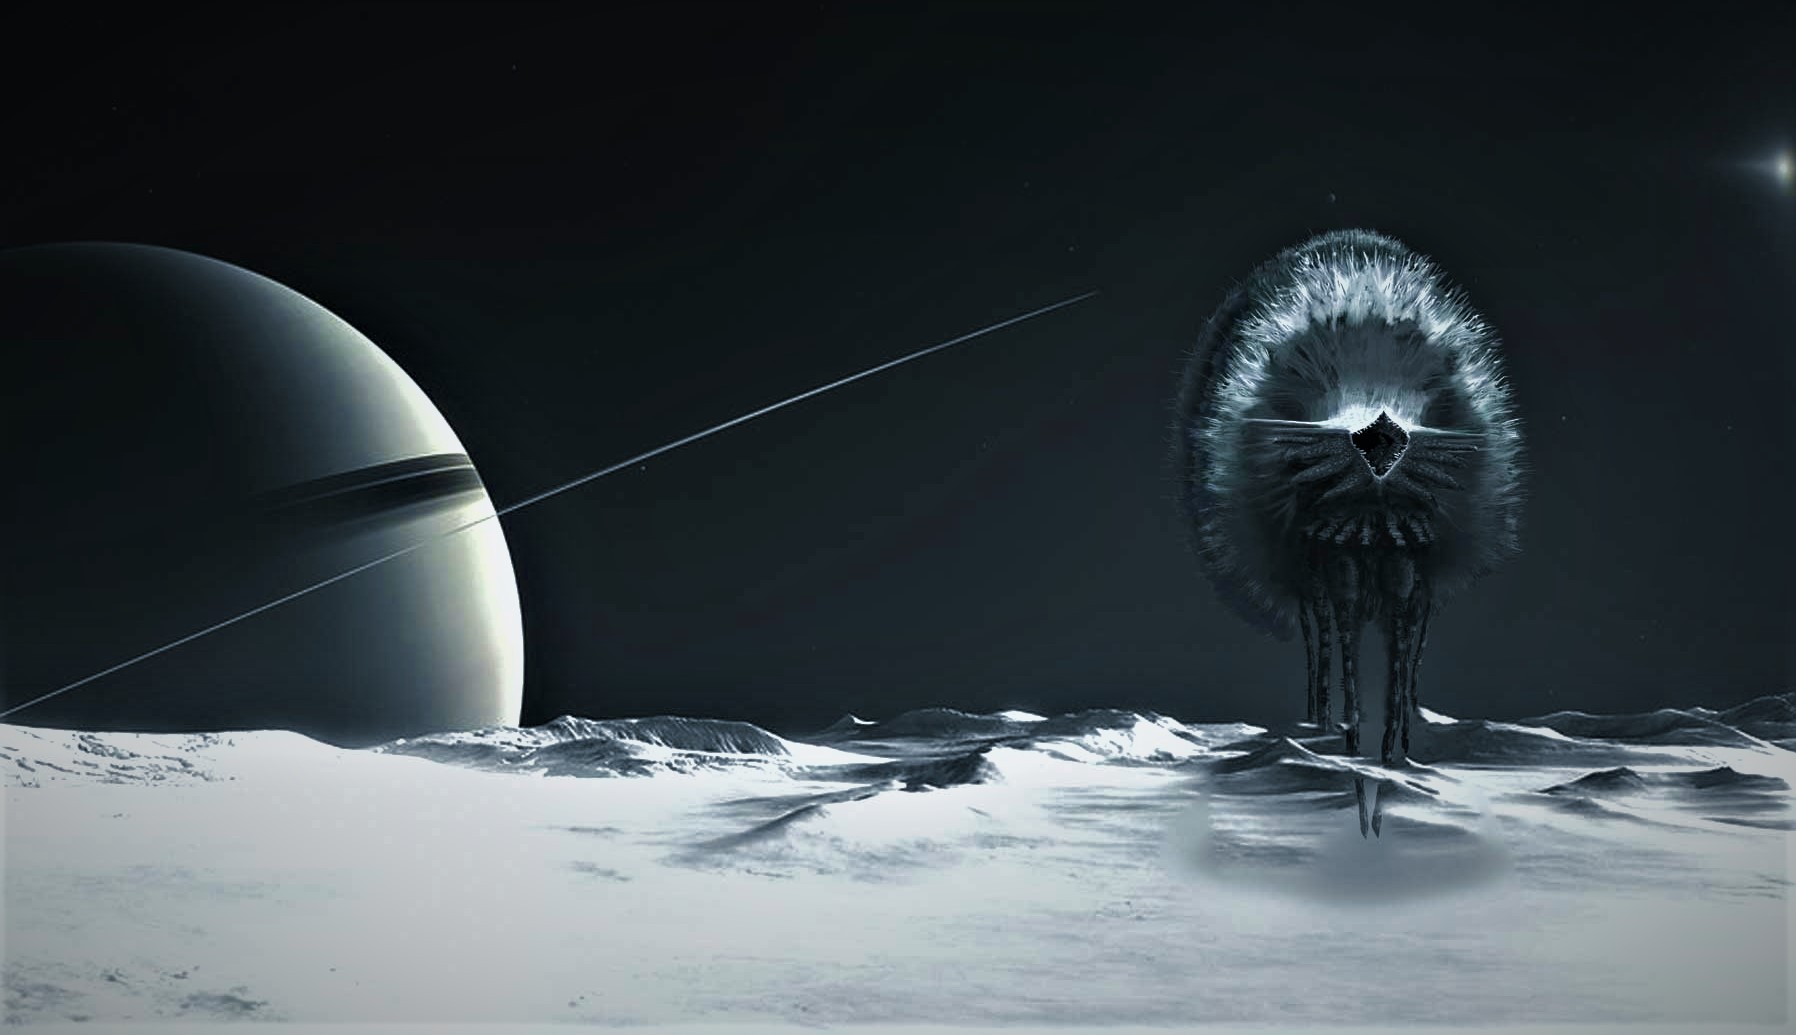 Eles confirmam que Enceladus é capaz de hospedar vida alienígena